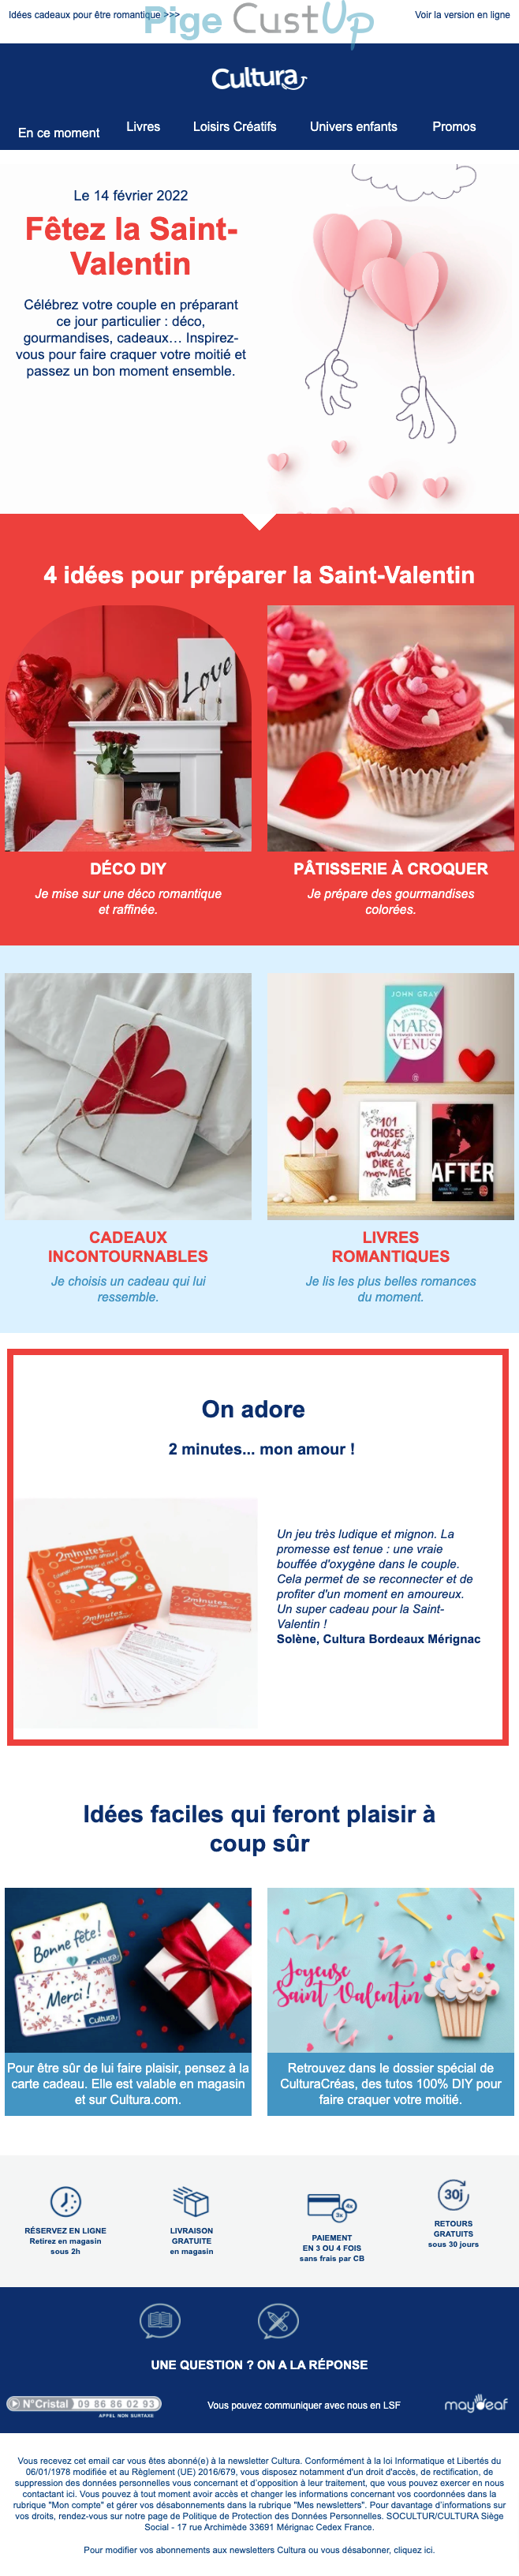 Exemple de Type de media  e-mailing - Cultura - Marketing relationnel - Calendaire (Noël, St valentin, Vœux, …)